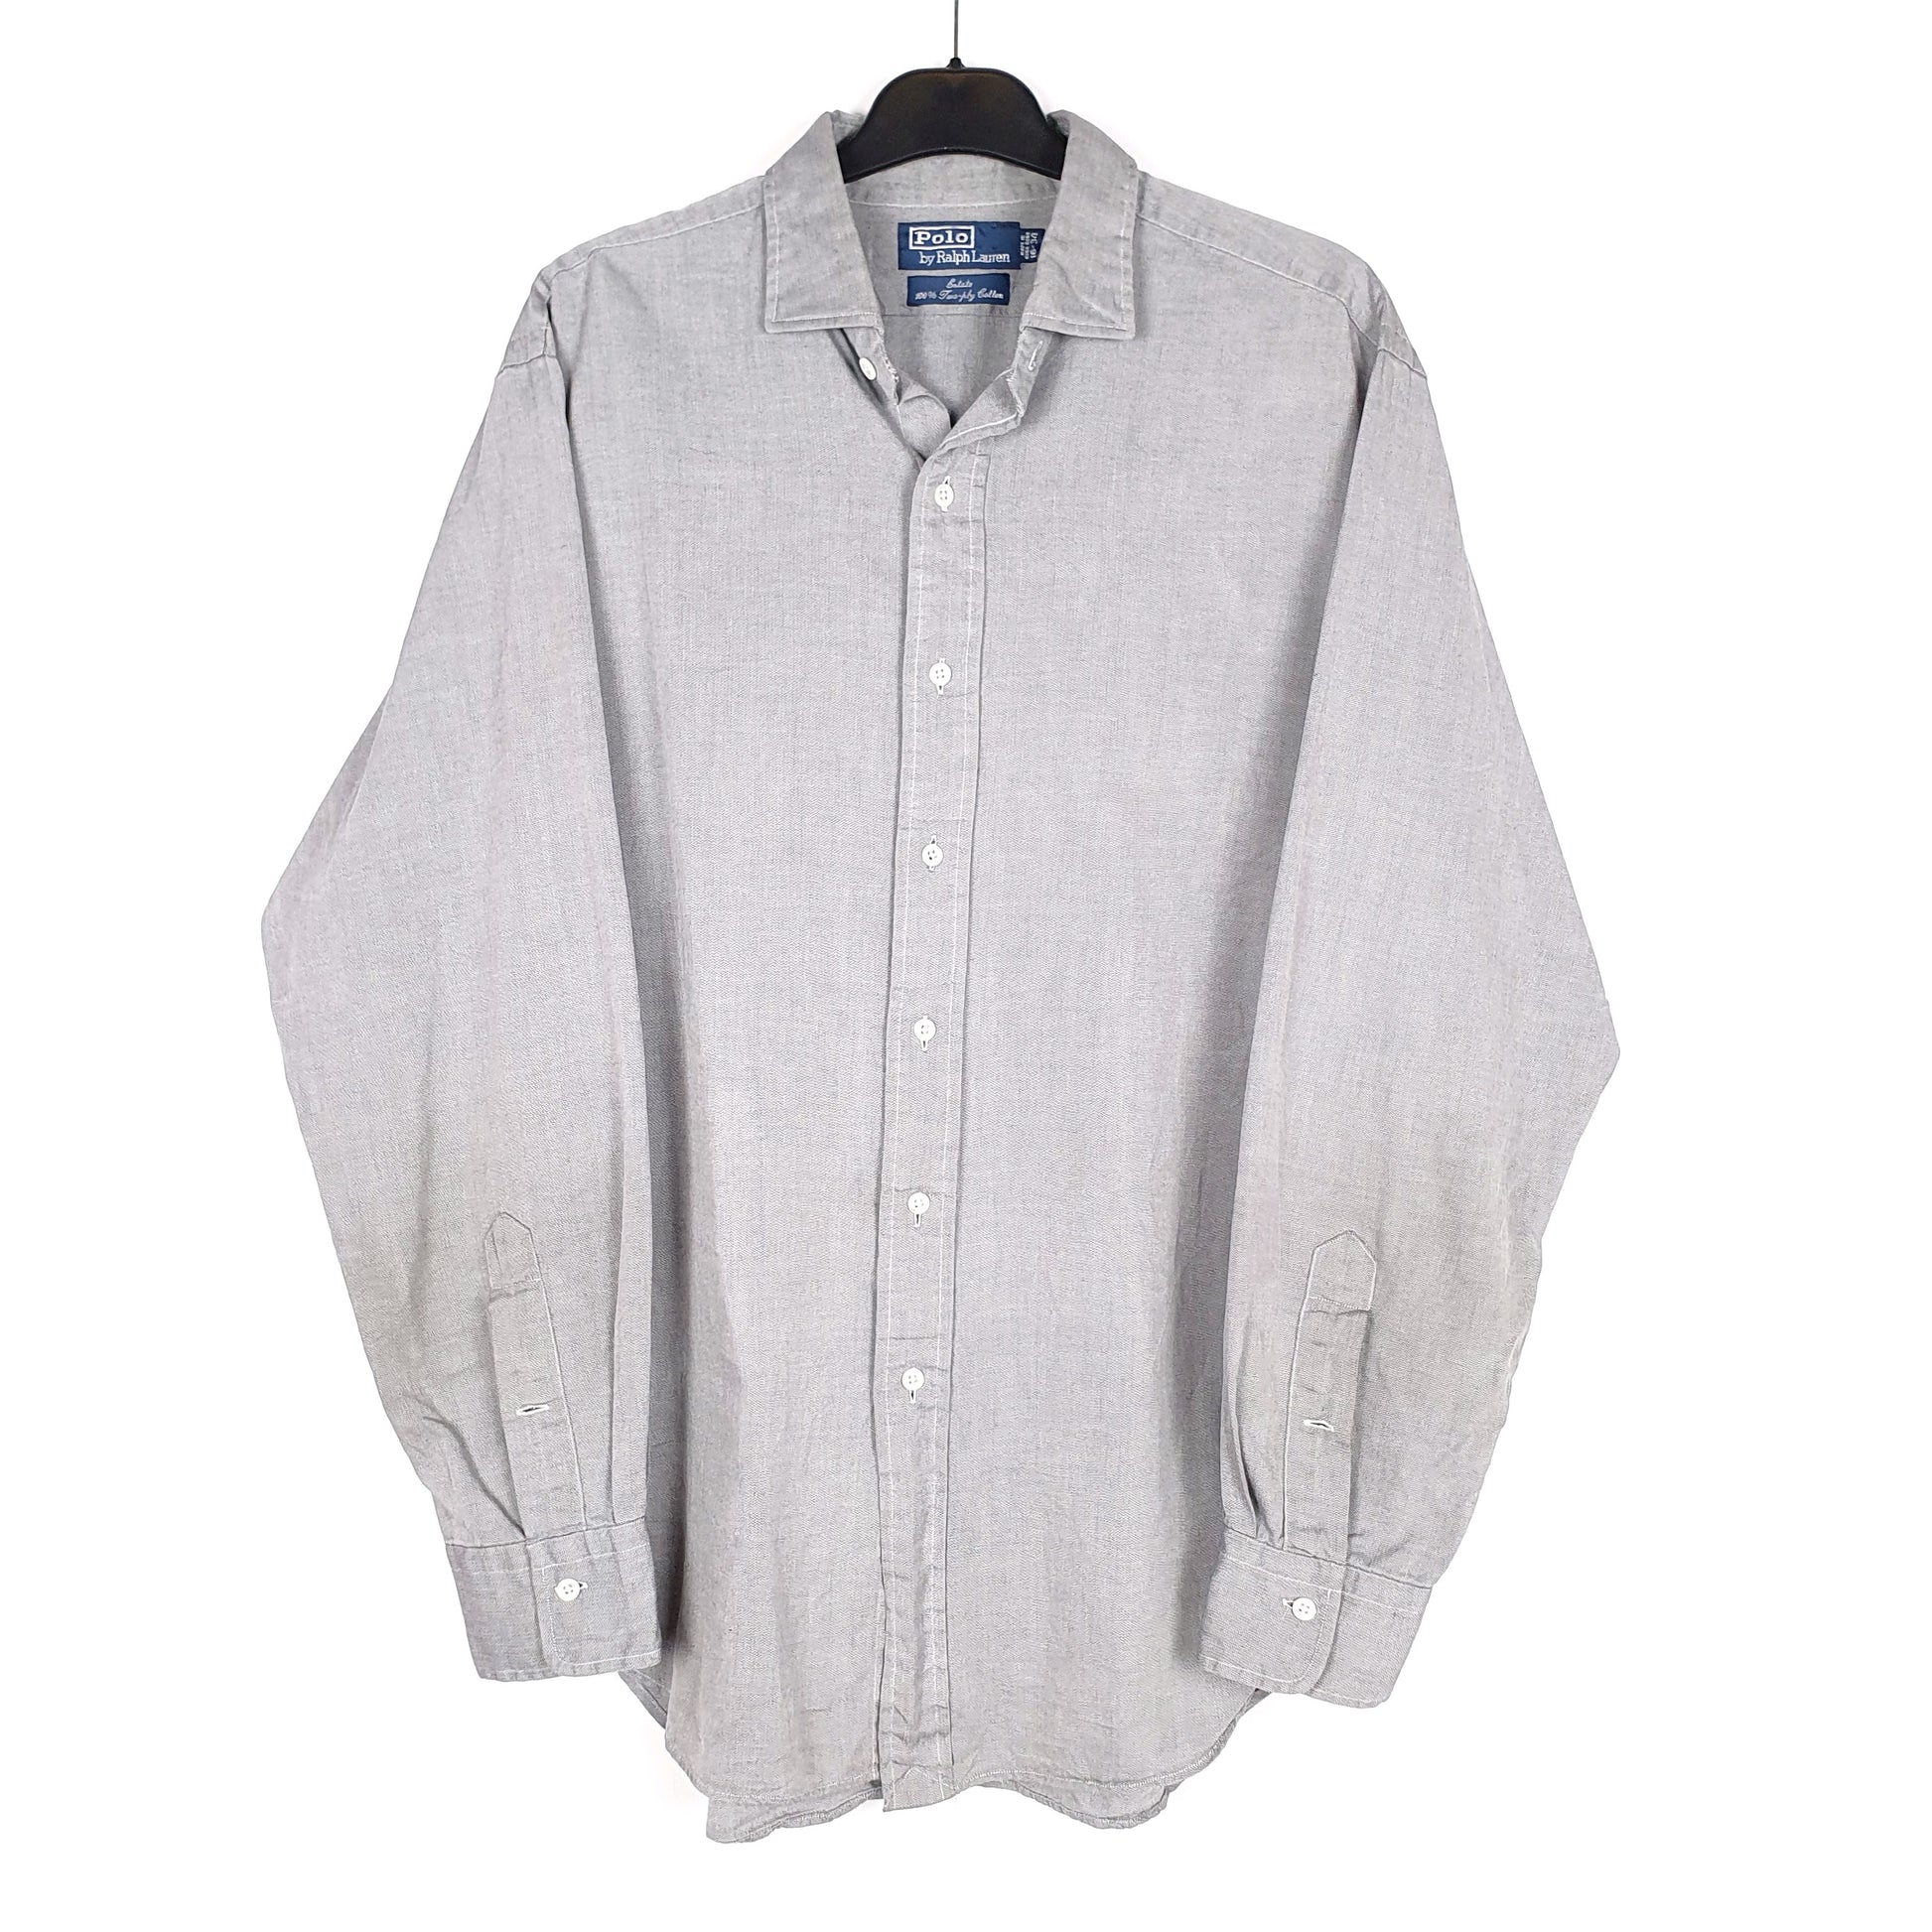 Grey Polo Ralph Lauren Long Sleeve Shirt